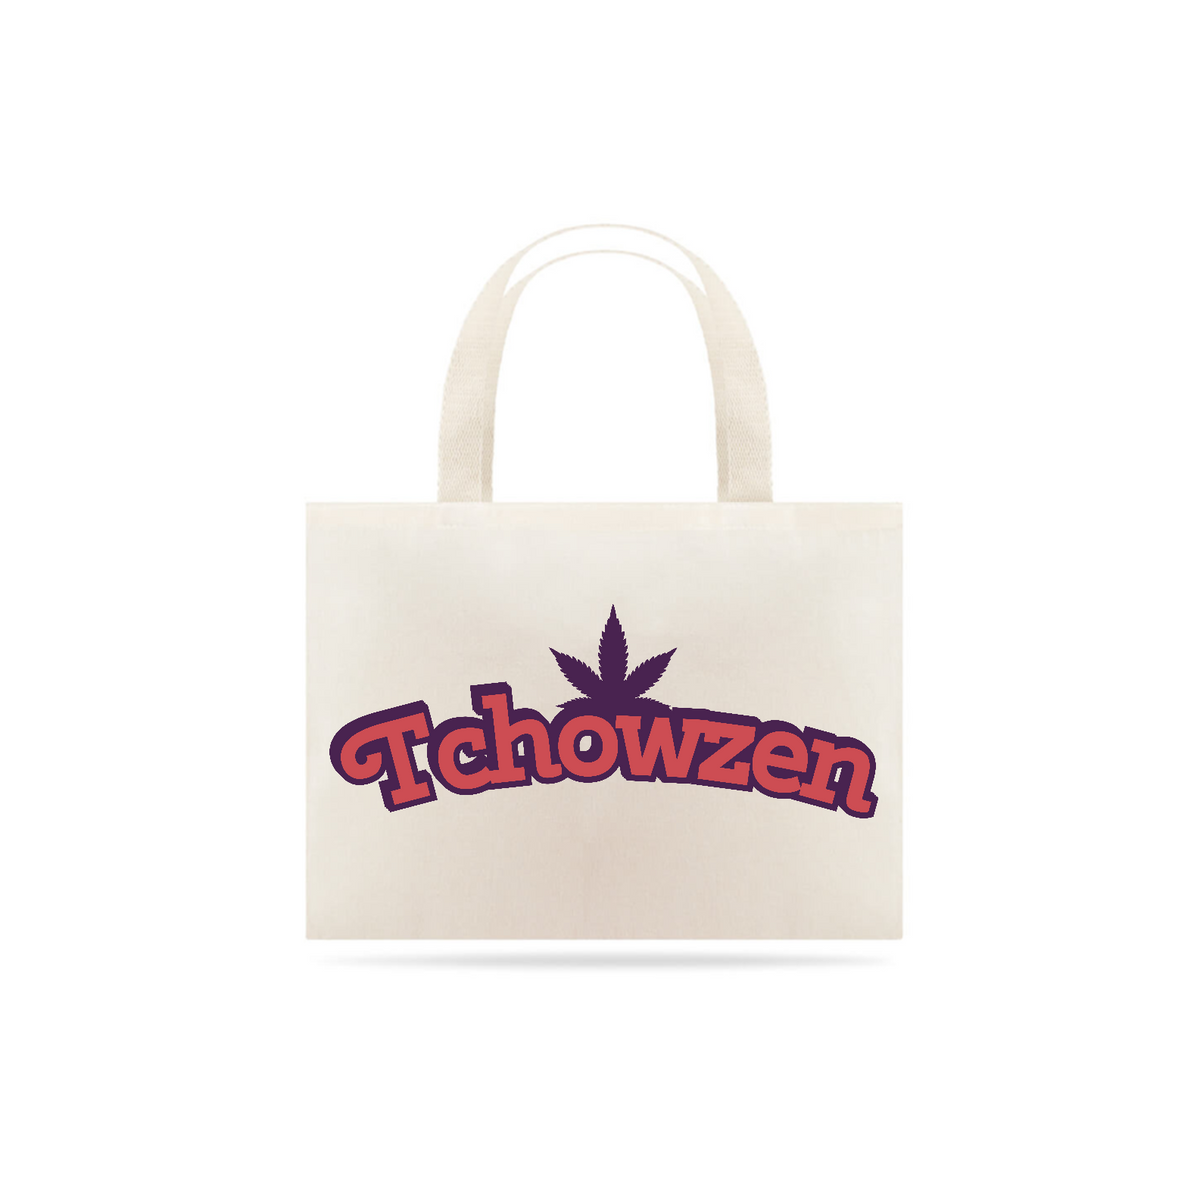 Nome do produto: Eco Bag Tchowzen